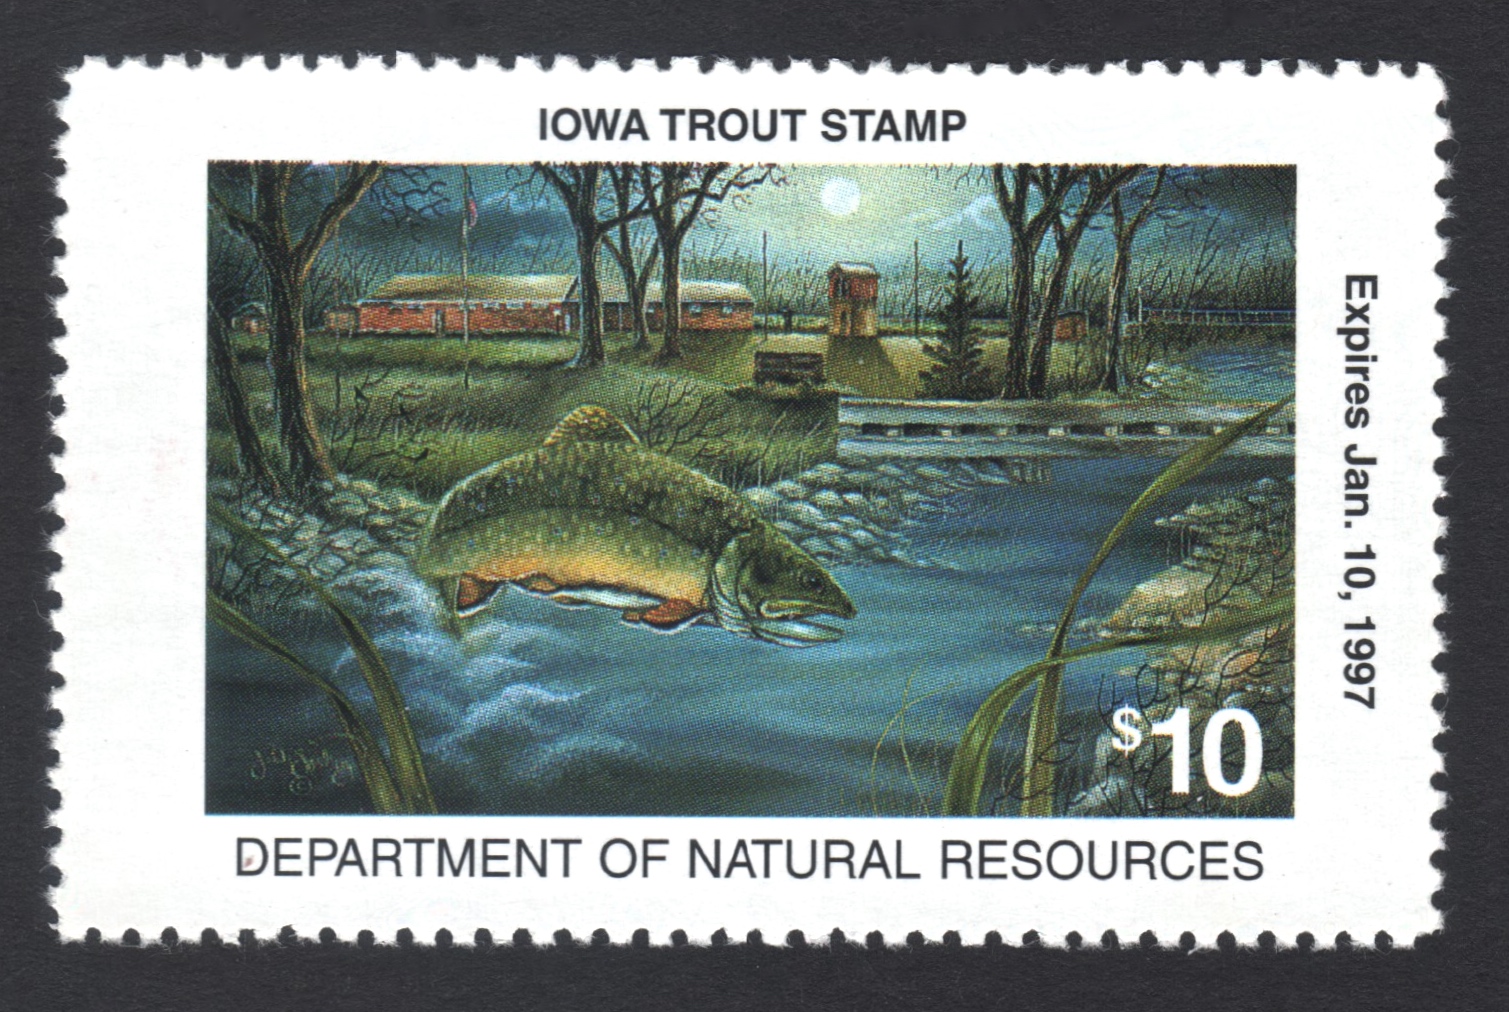 1996-97 Iowa Trout